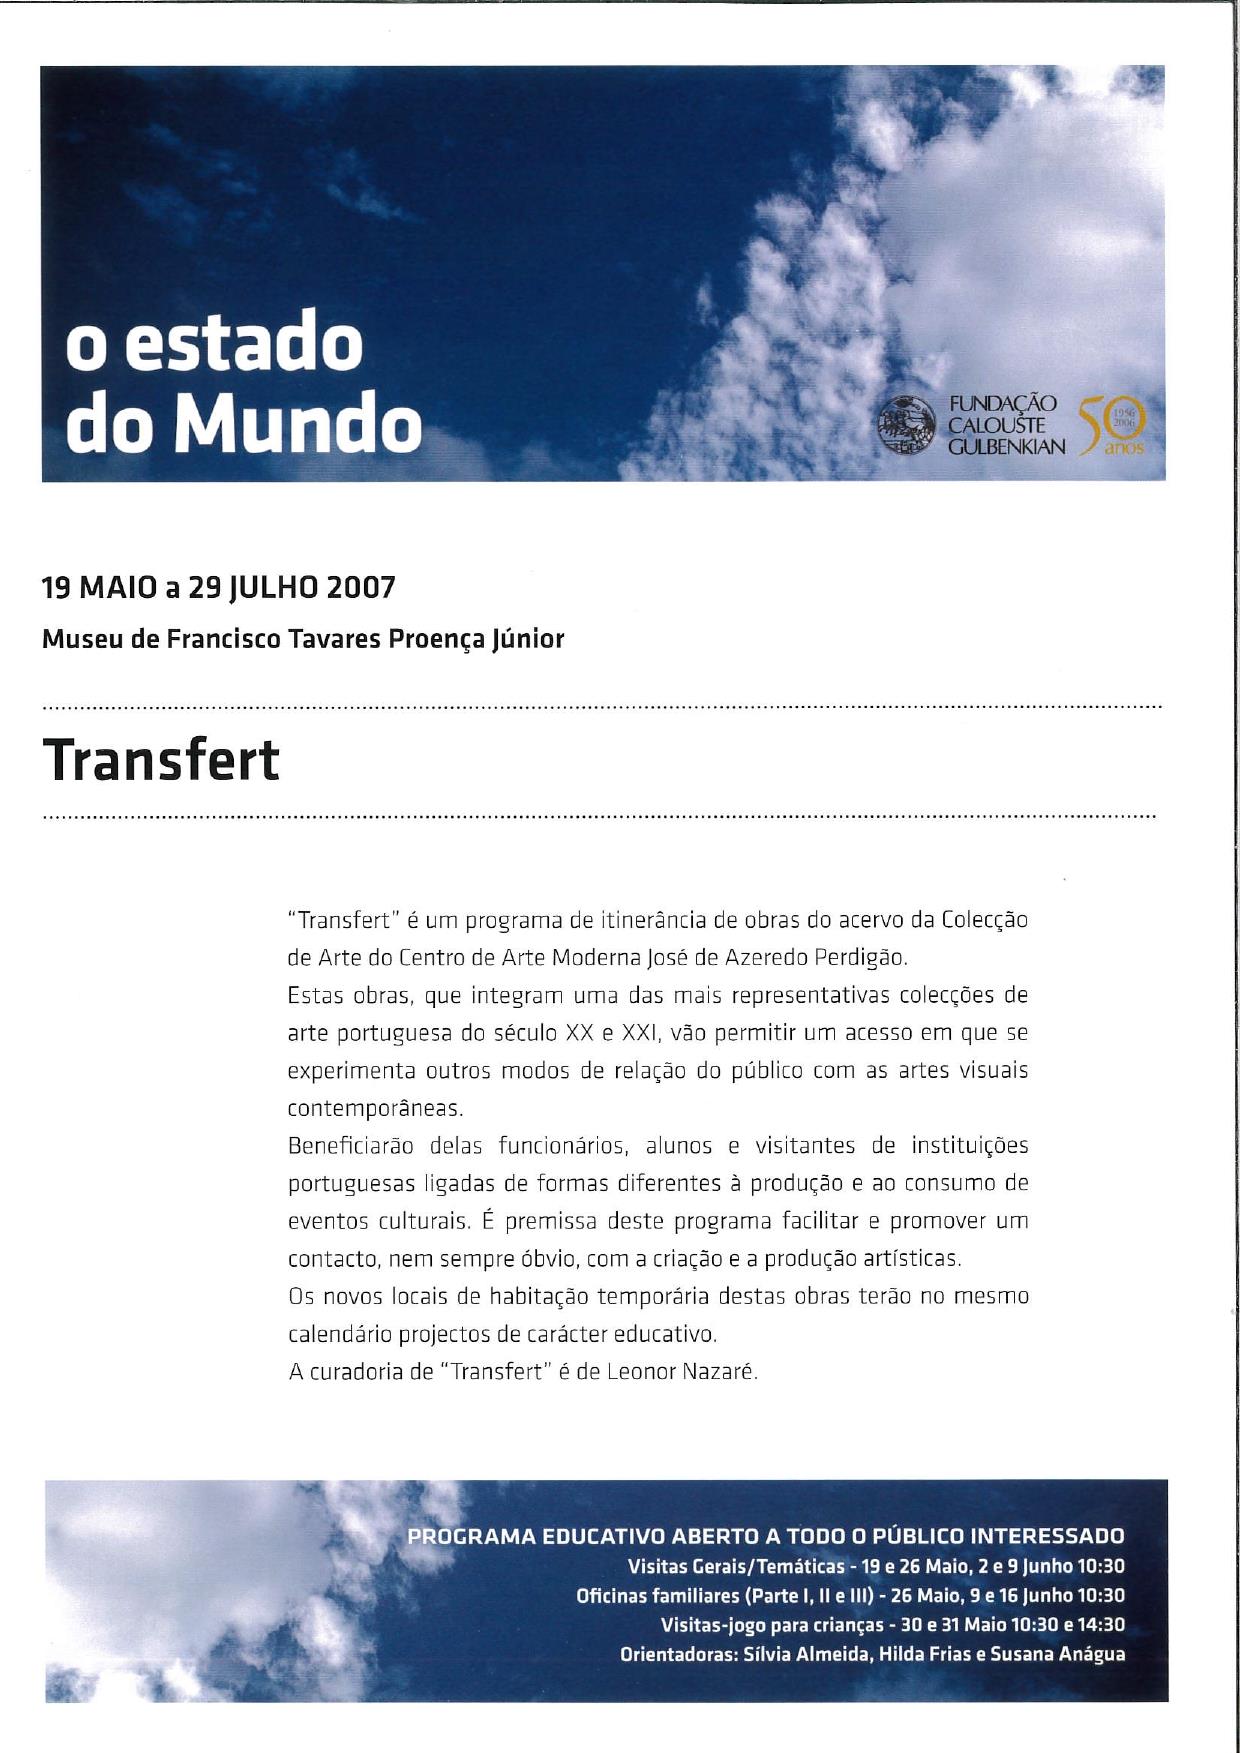 Transfert. Museu de Francisco Tavares Proença Júnior